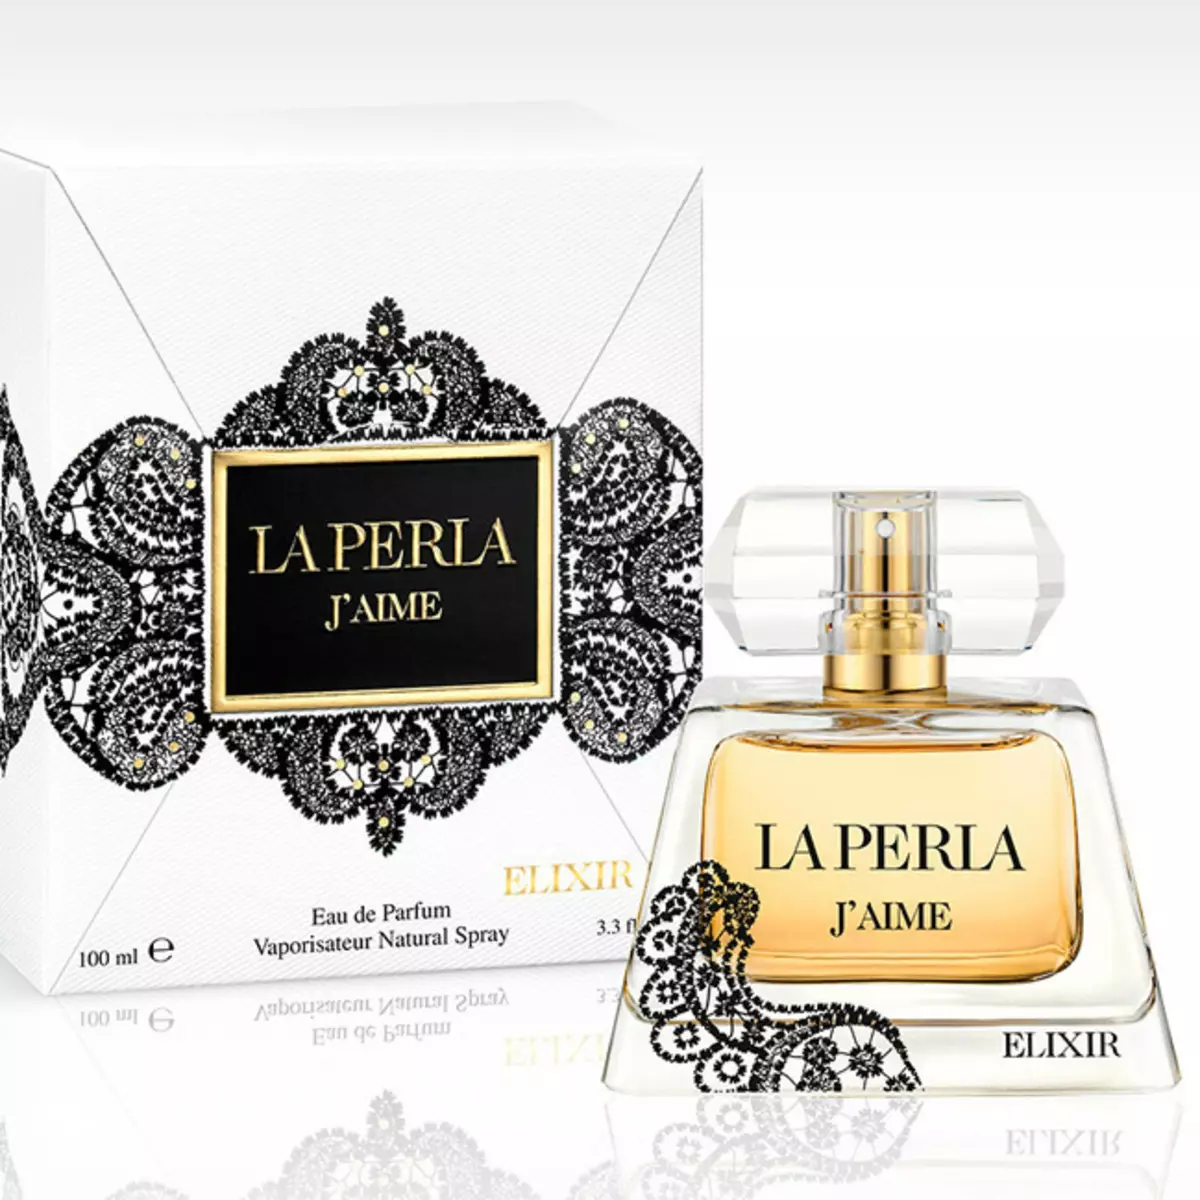 Parfum La Perla: Parfumuri pentru femei, Divina Apa de toaleta, J'aime si Les Fleurs, La Perla Arome 25270_2